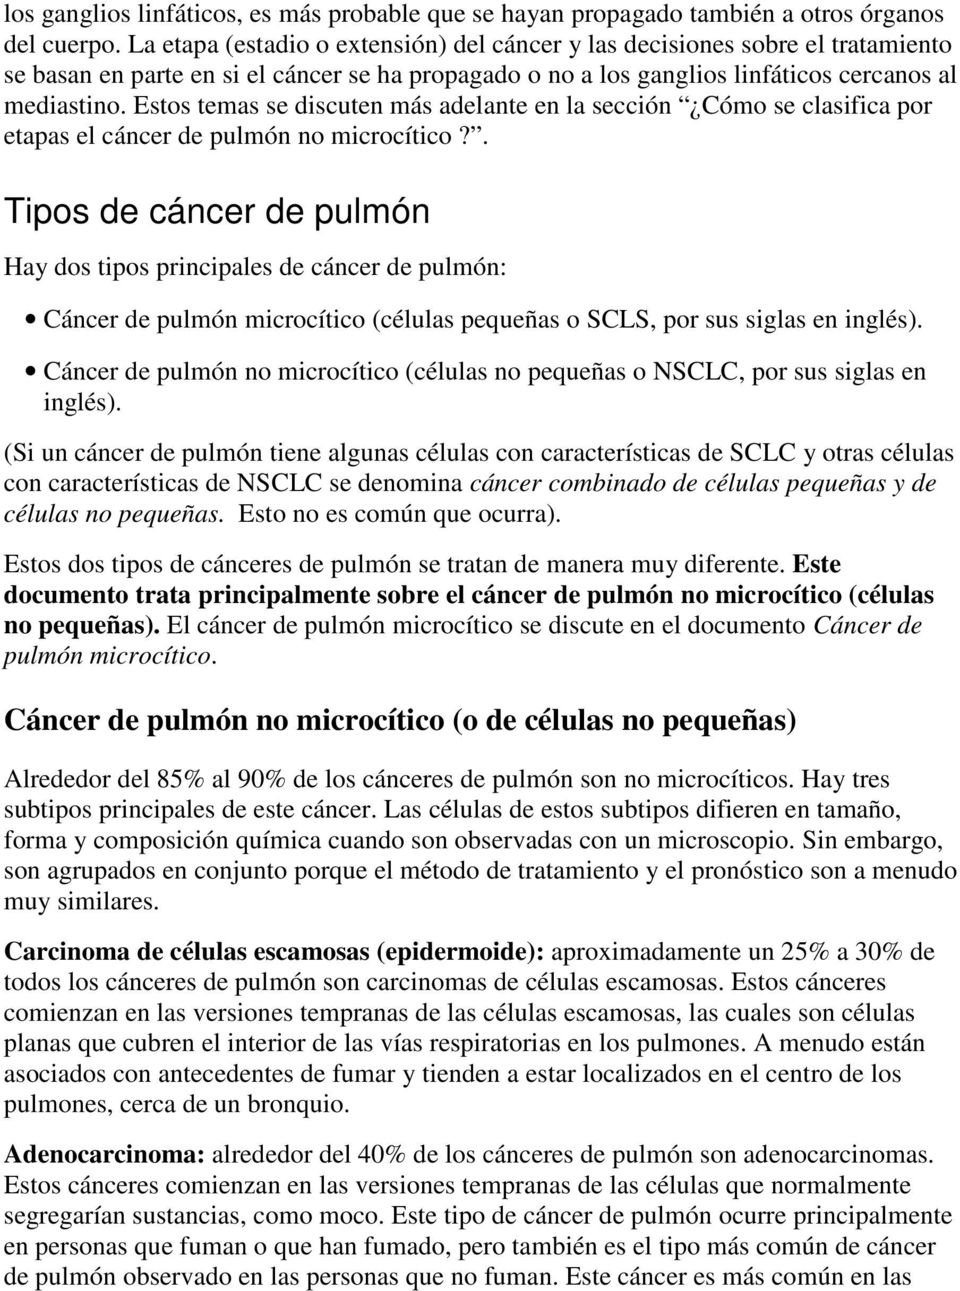 Estos temas se discuten más adelante en la sección Cómo se clasifica por etapas el cáncer de pulmón no microcítico?